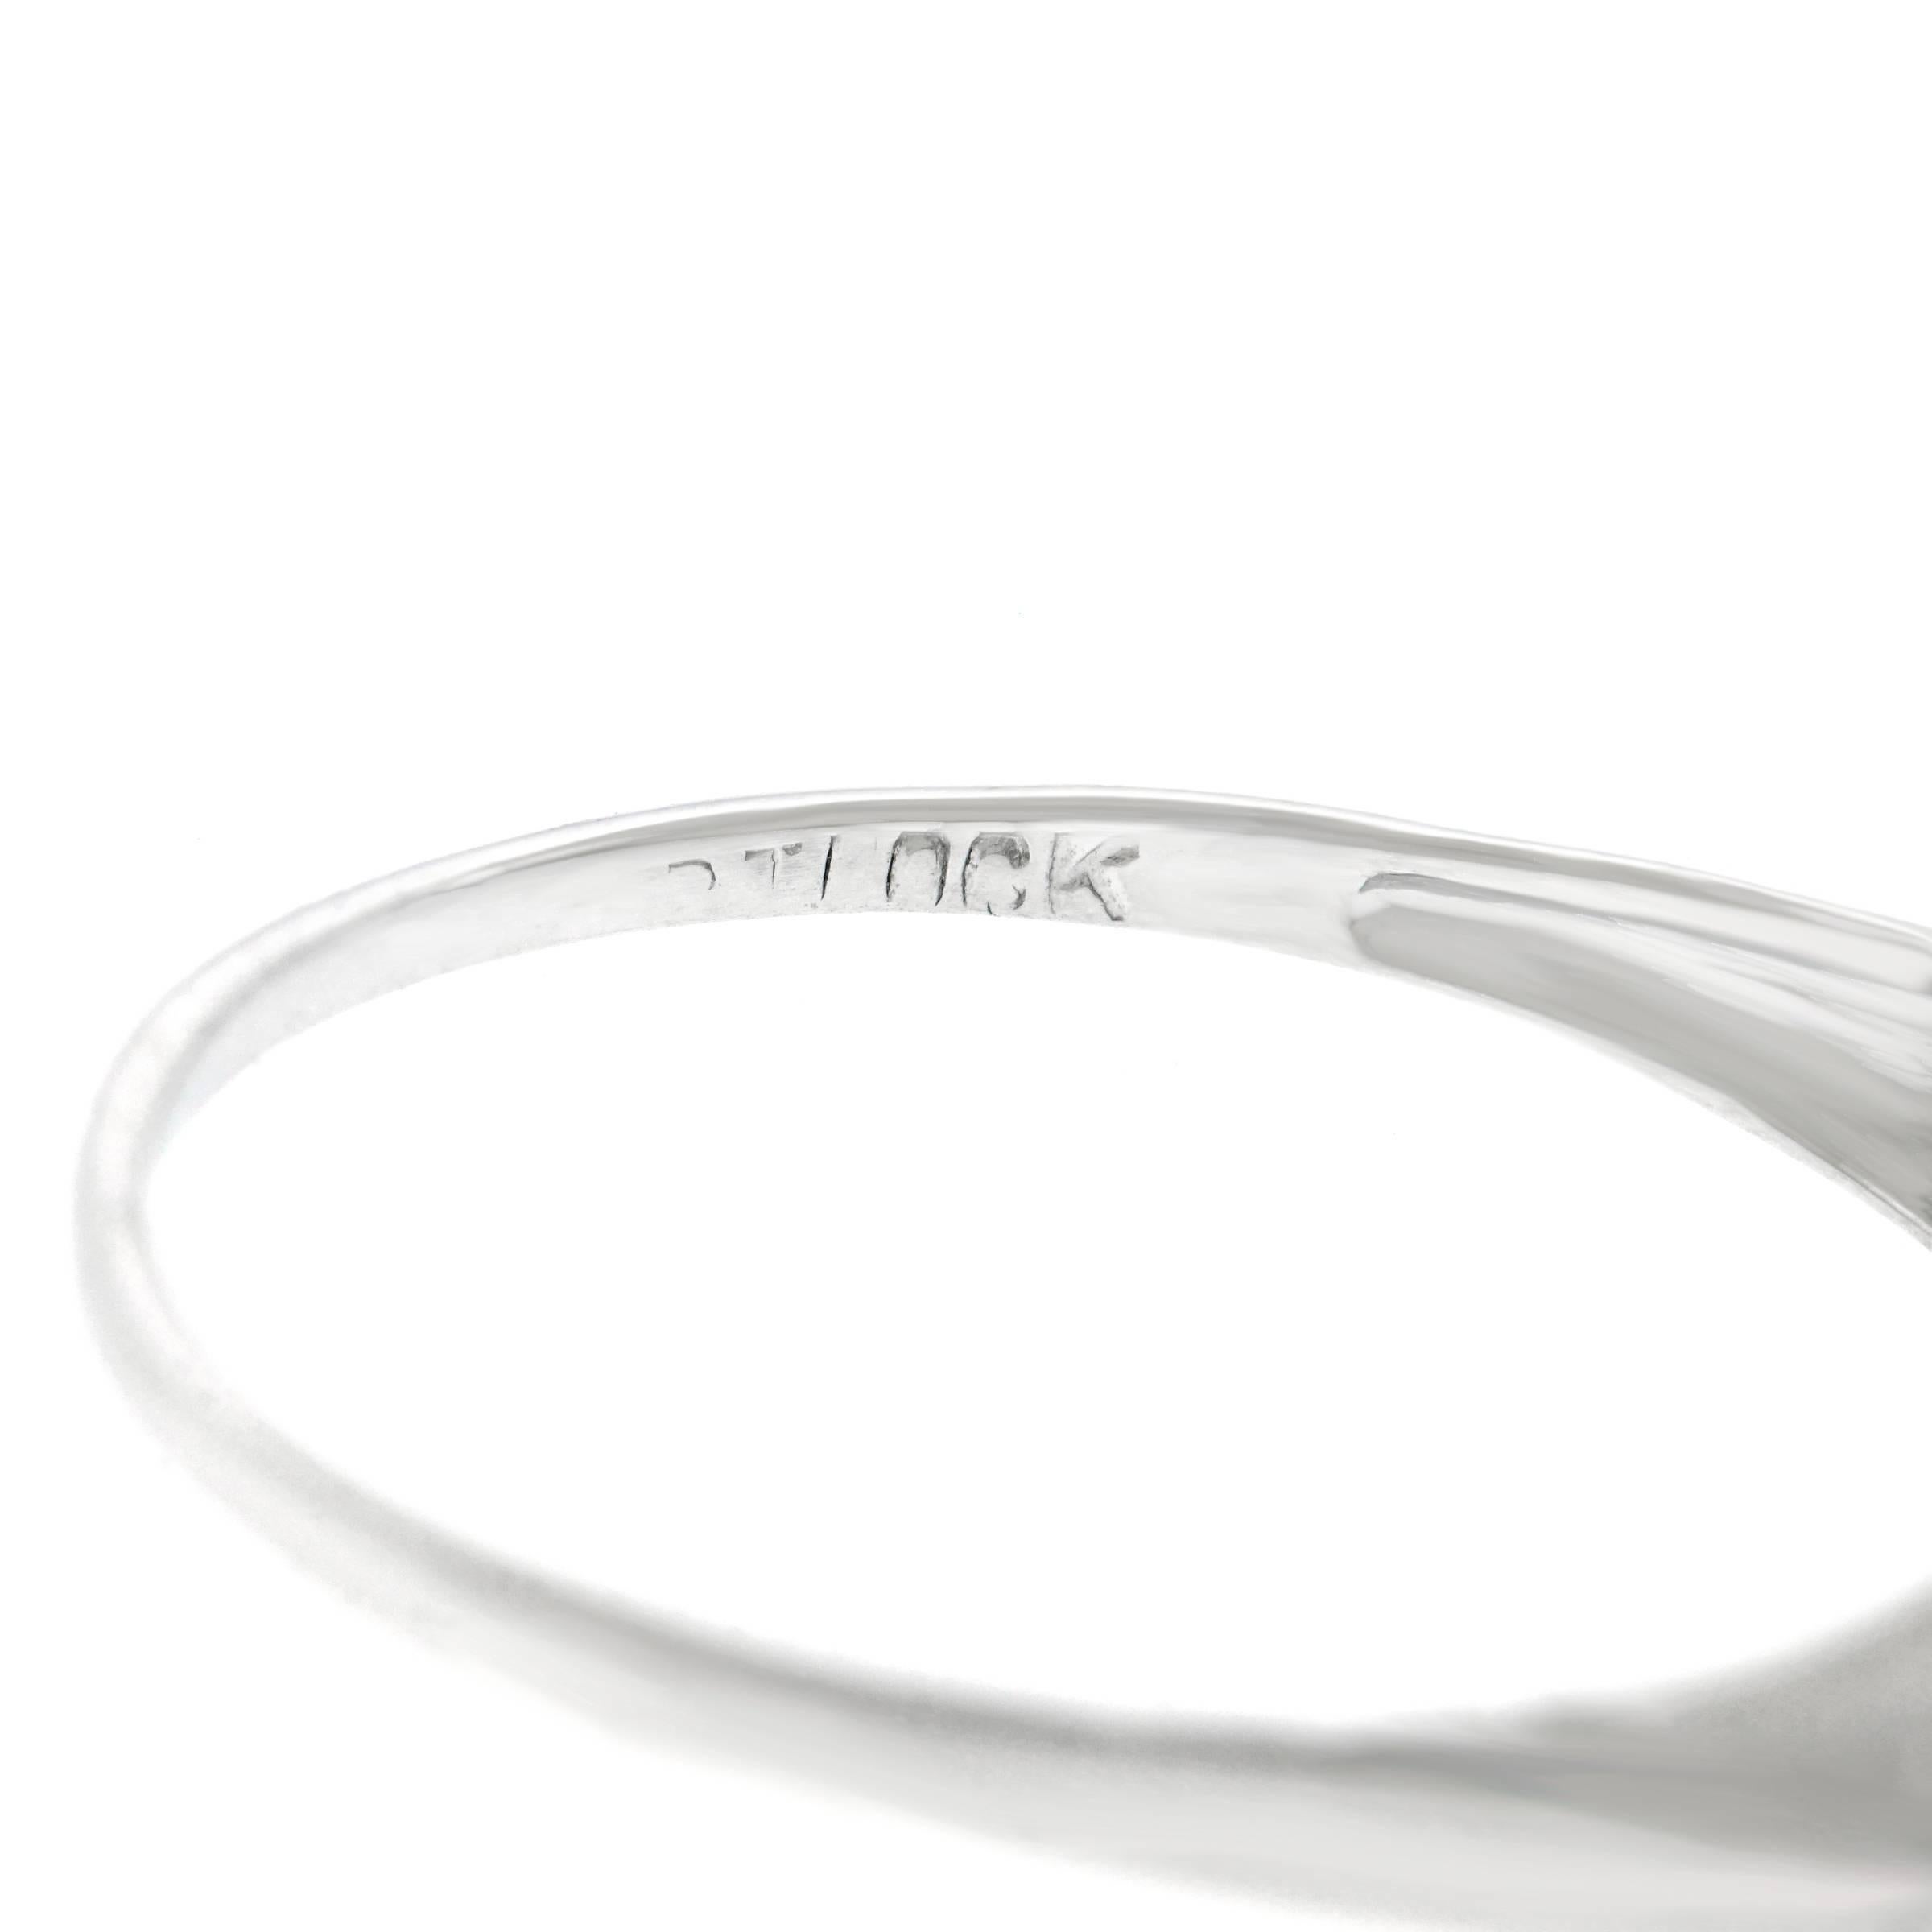 Women's Art Deco Diamond Engagement Ring, White Gold